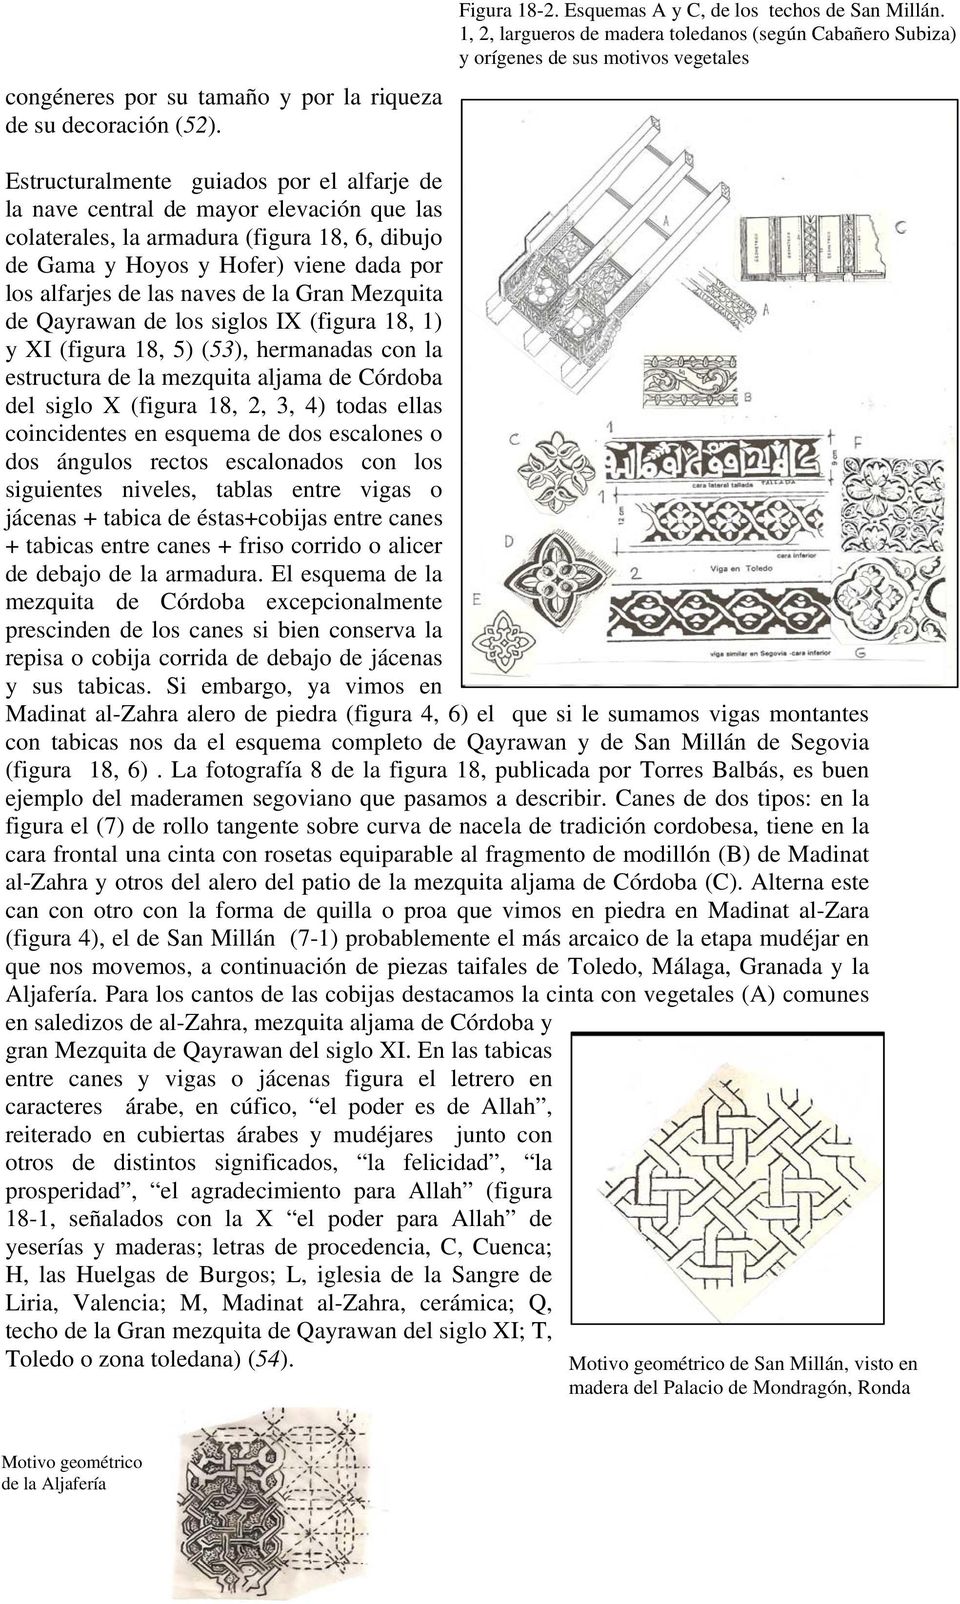 armadura (figura 18, 6, dibujo de Gama y Hoyos y Hofer) viene dada por los alfarjes de las naves de la Gran Mezquita de Qayrawan de los siglos IX (figura 18, 1) y XI (figura 18, 5) (53), hermanadas